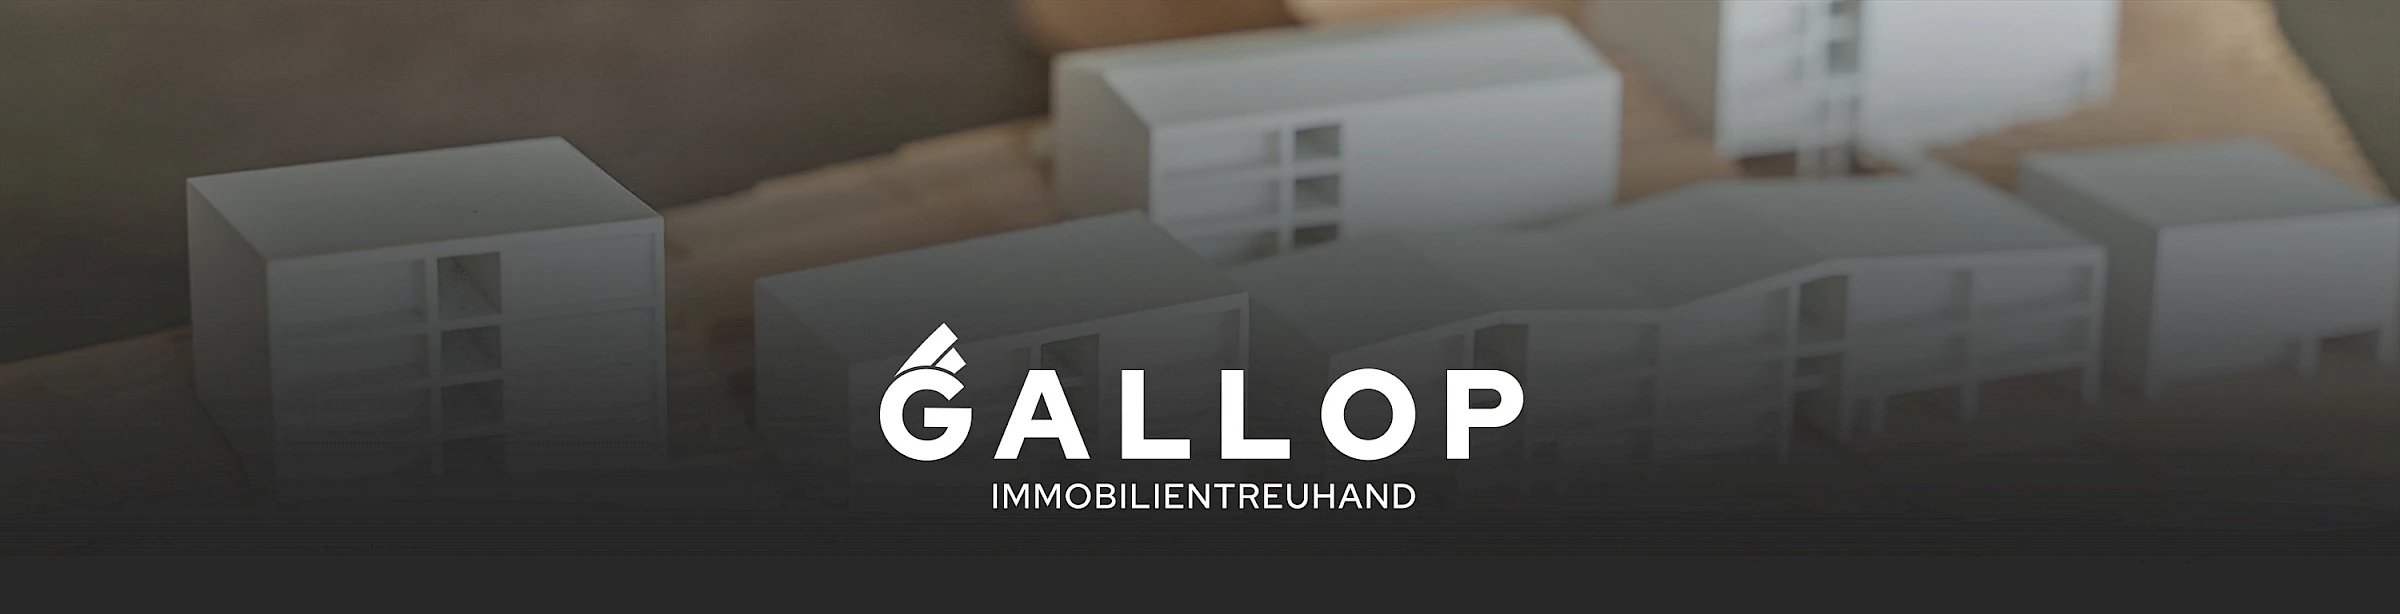 Logo Gallop Mario Immobilientreuhänder. Credit: Werbeagentur Buerostark in Telfs